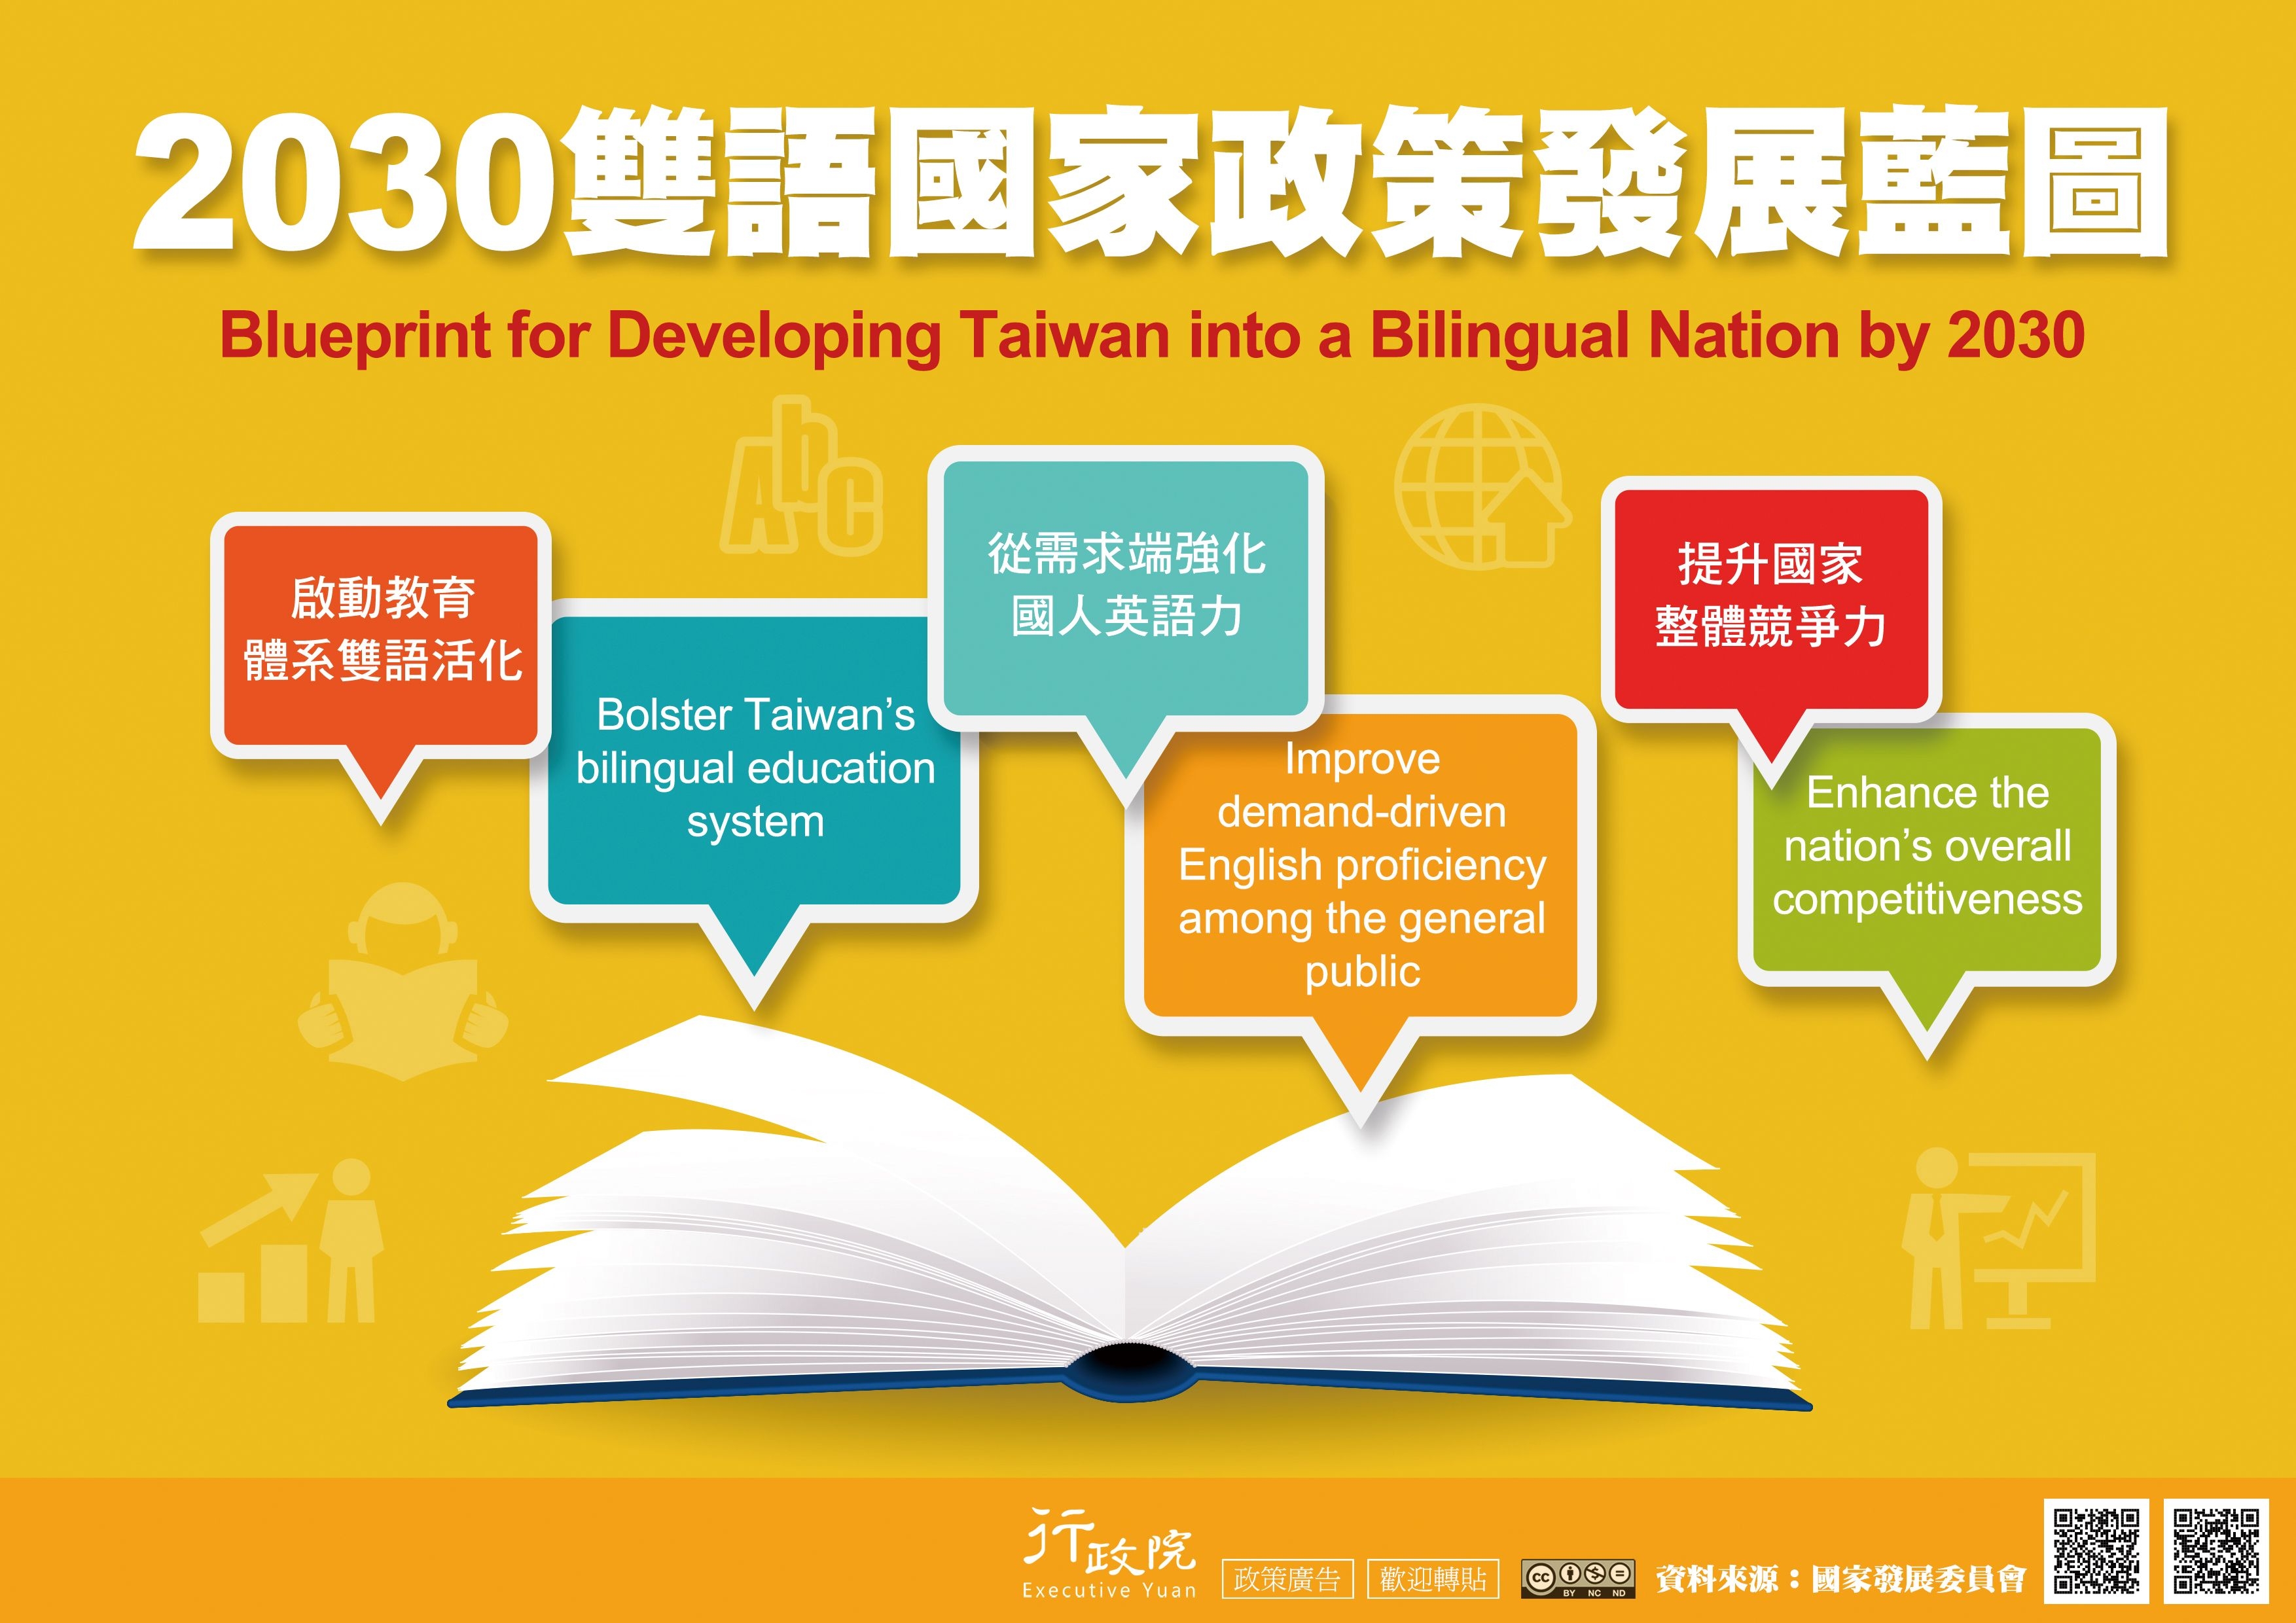 為提升國民英語力增加國際競爭力，政府推動教育體系的雙語活化，以2030年為目標，打造台灣成為雙語國家，特製作2030雙語國家政策發展藍圖。